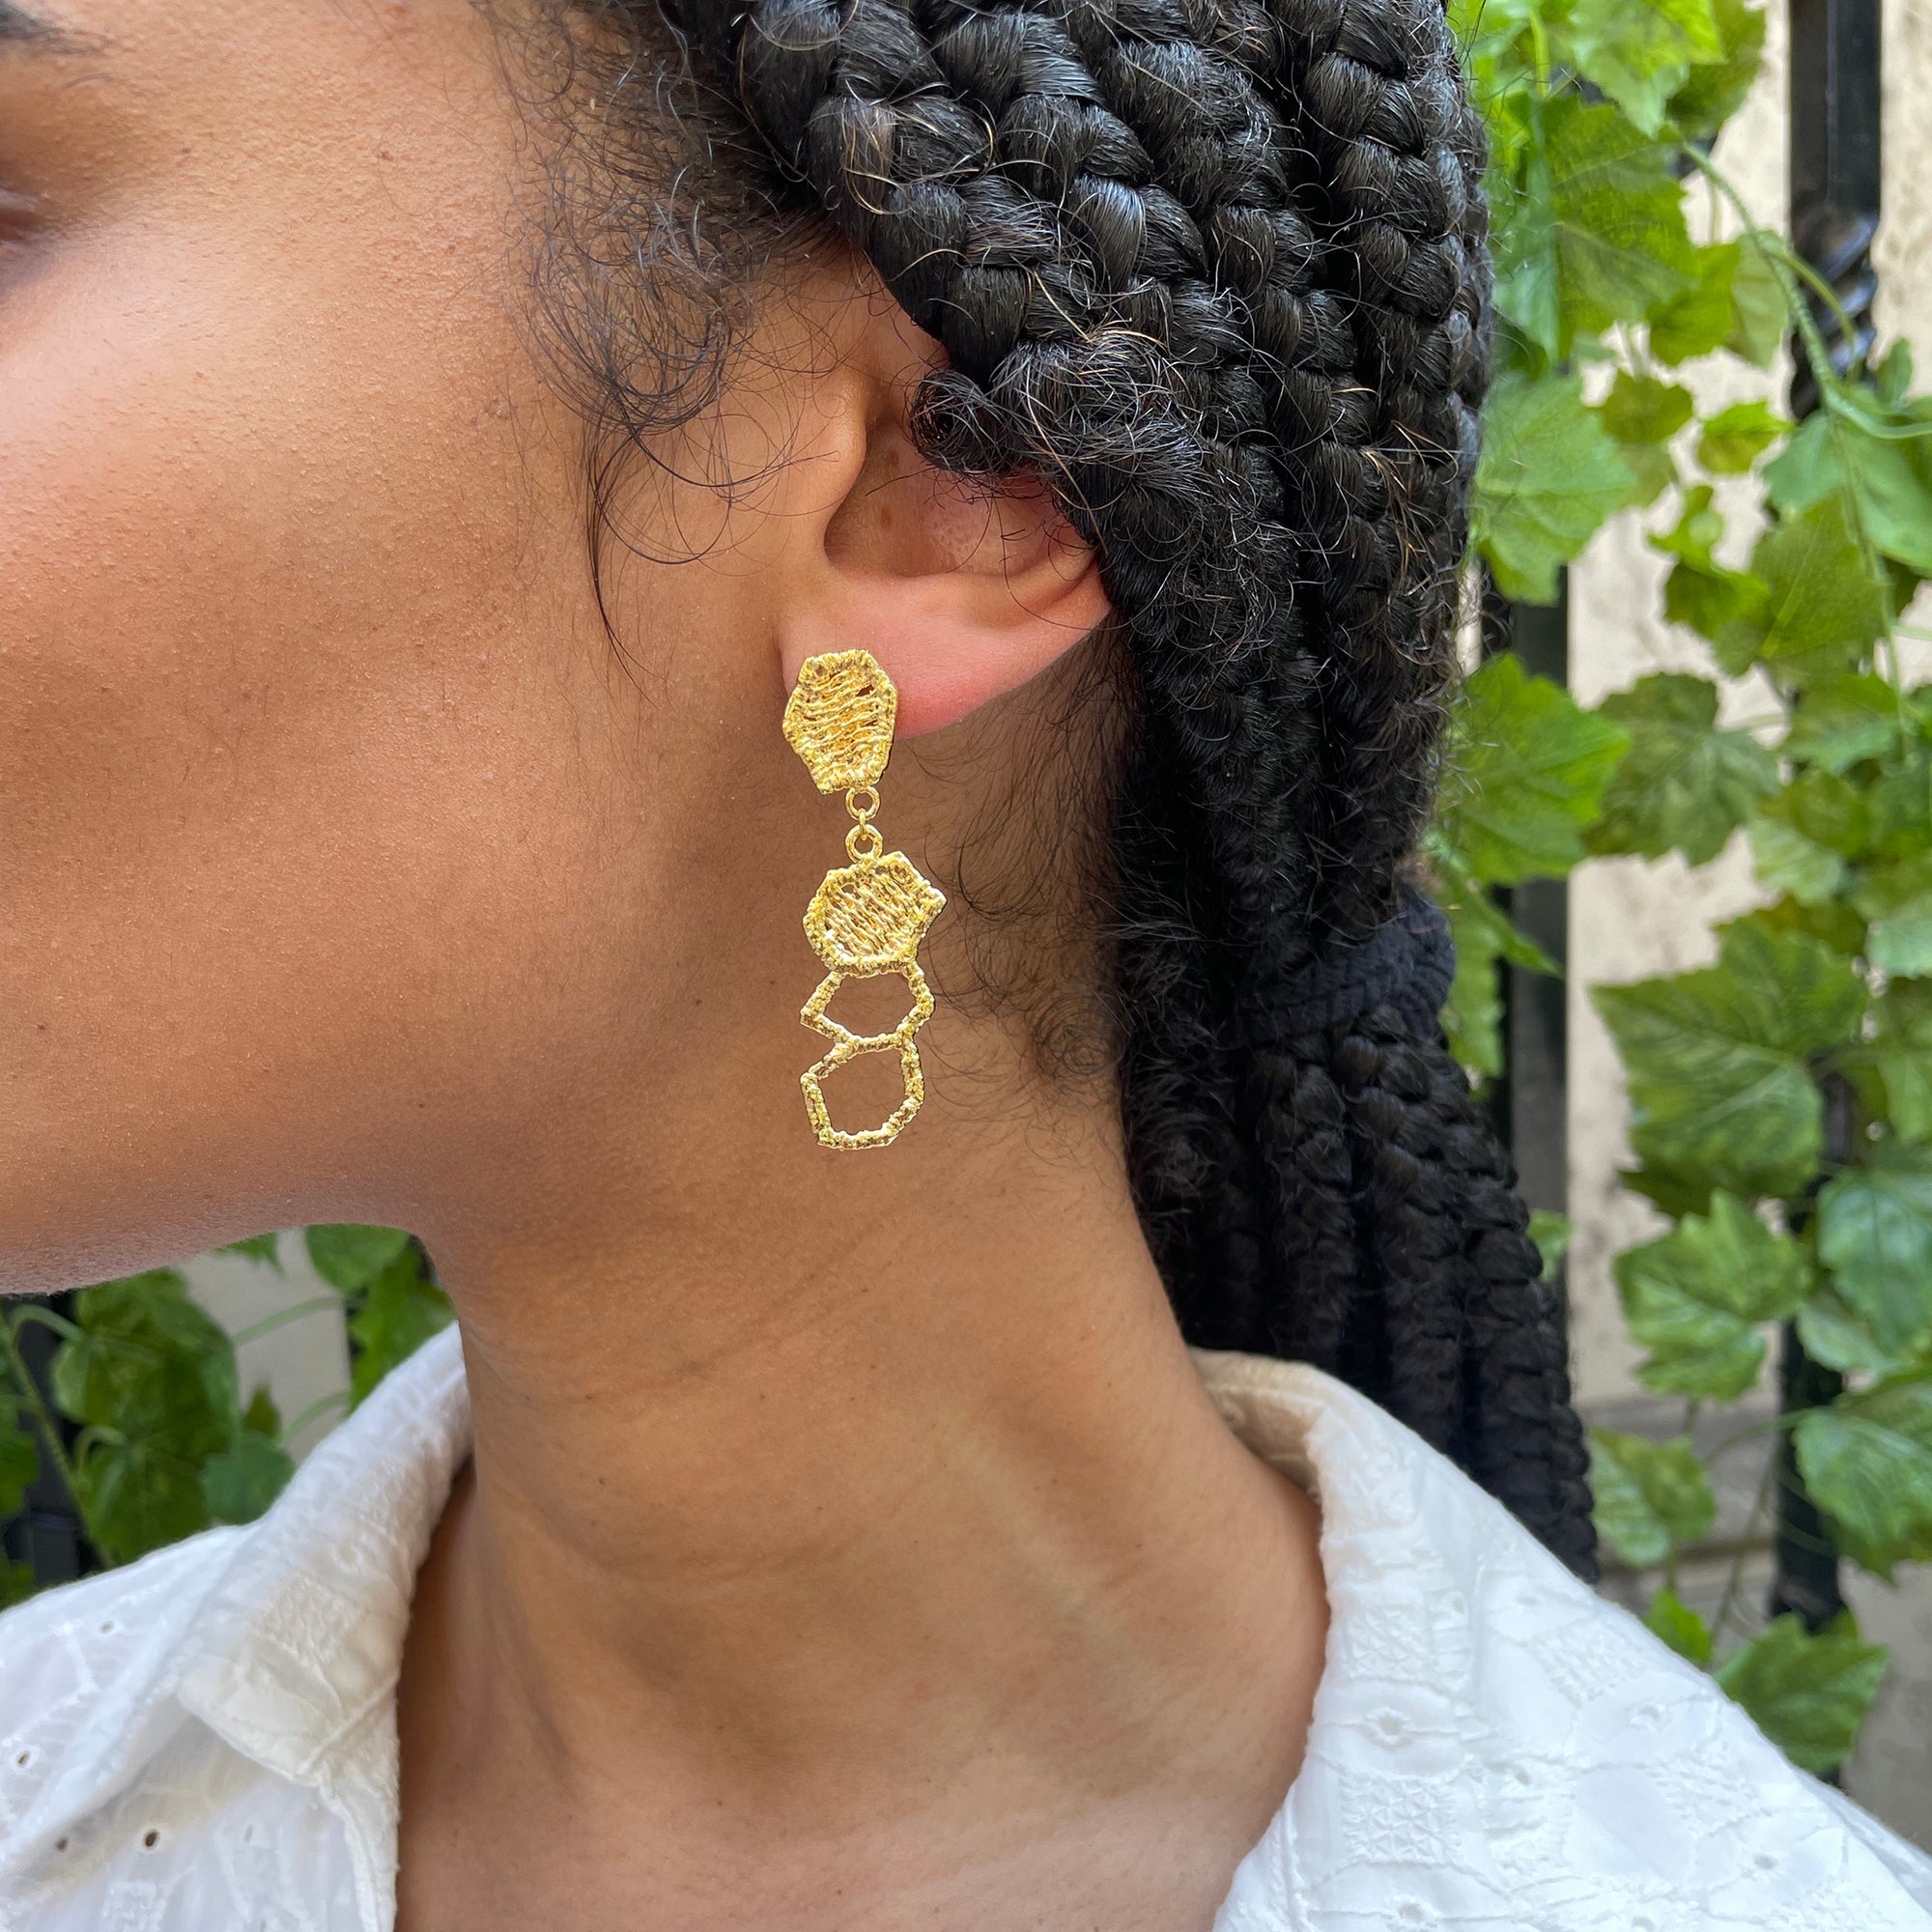 Honeycomb lace drop earrings in 24k gold.